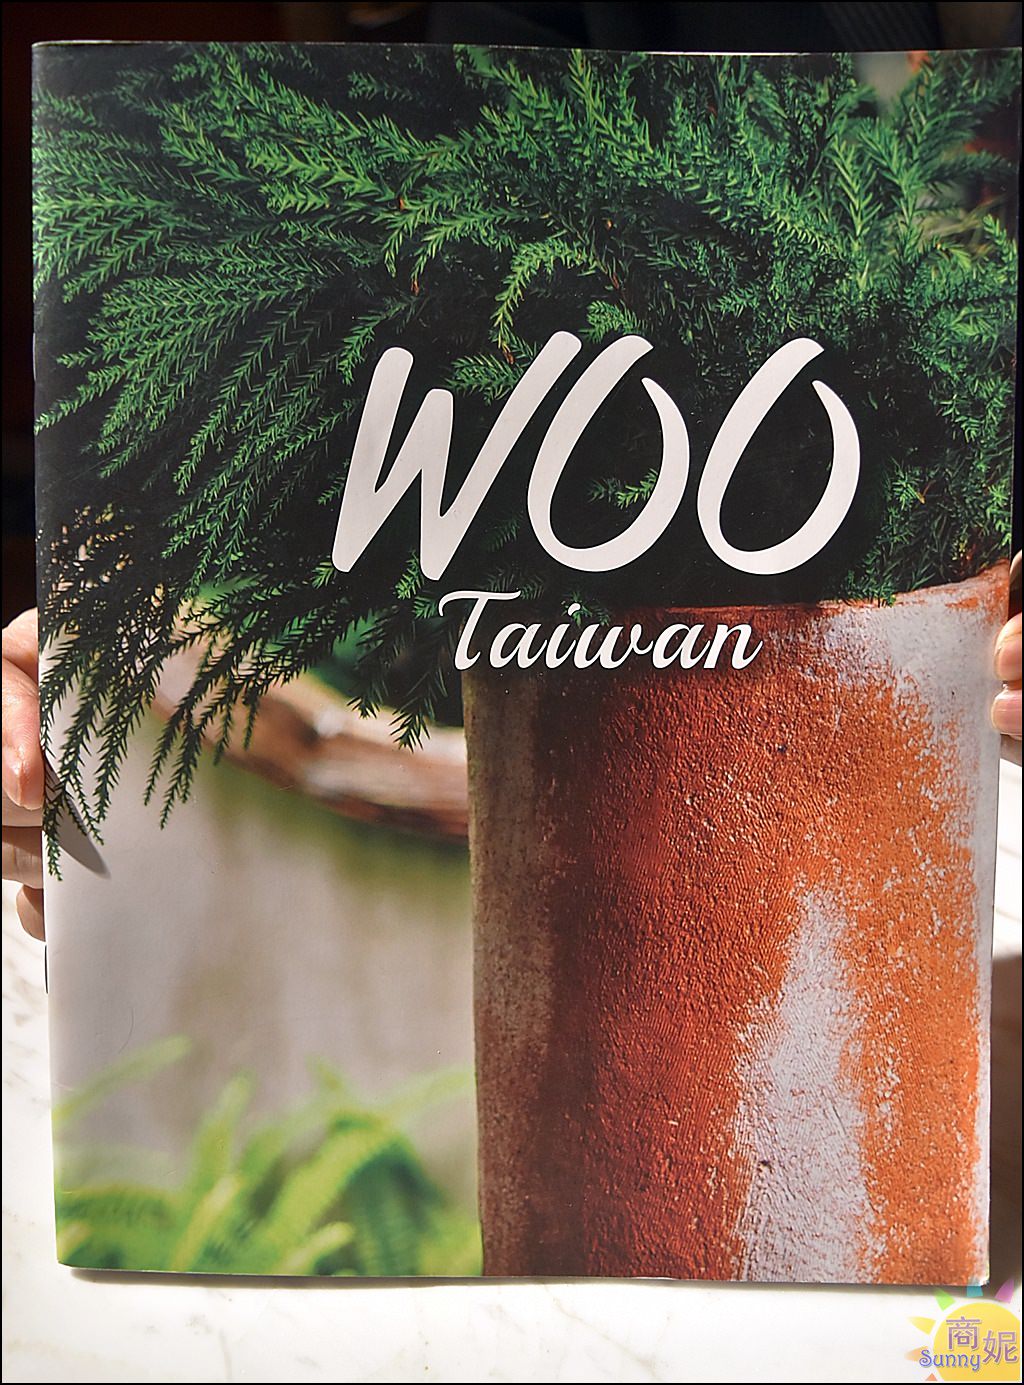 WOO,WOO Taiwan,WOO Taiwan價位,WOO Taiwan消費方式,WOO Taiwan菜單,WOO價位,WOO消費方式,WOO菜單,台中泰式料理